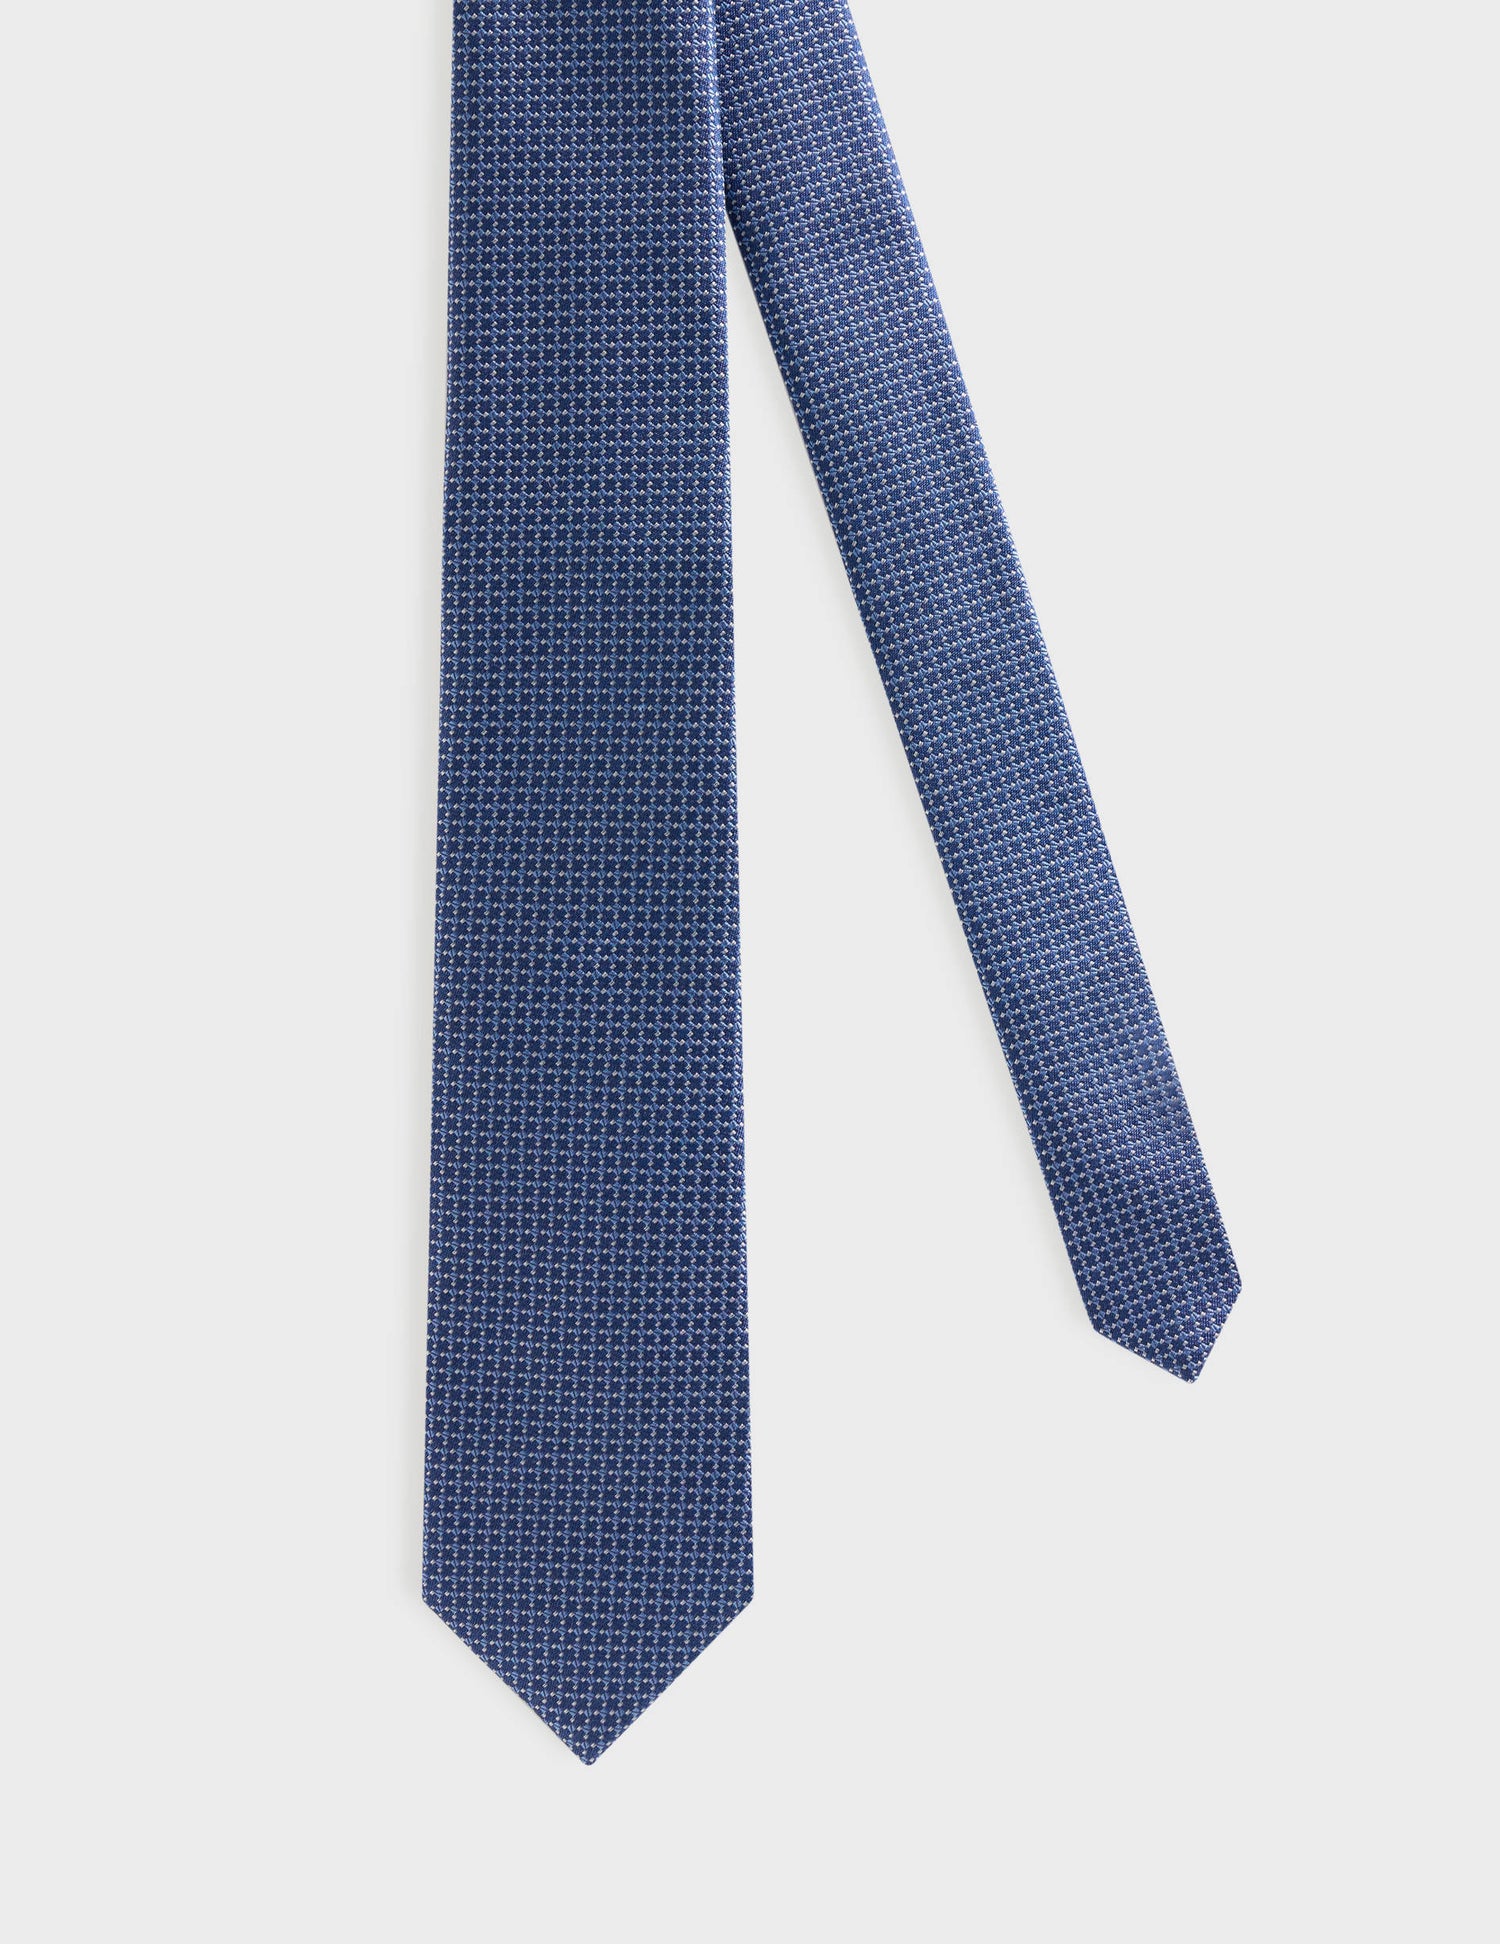 Fine patterned blue silk tie